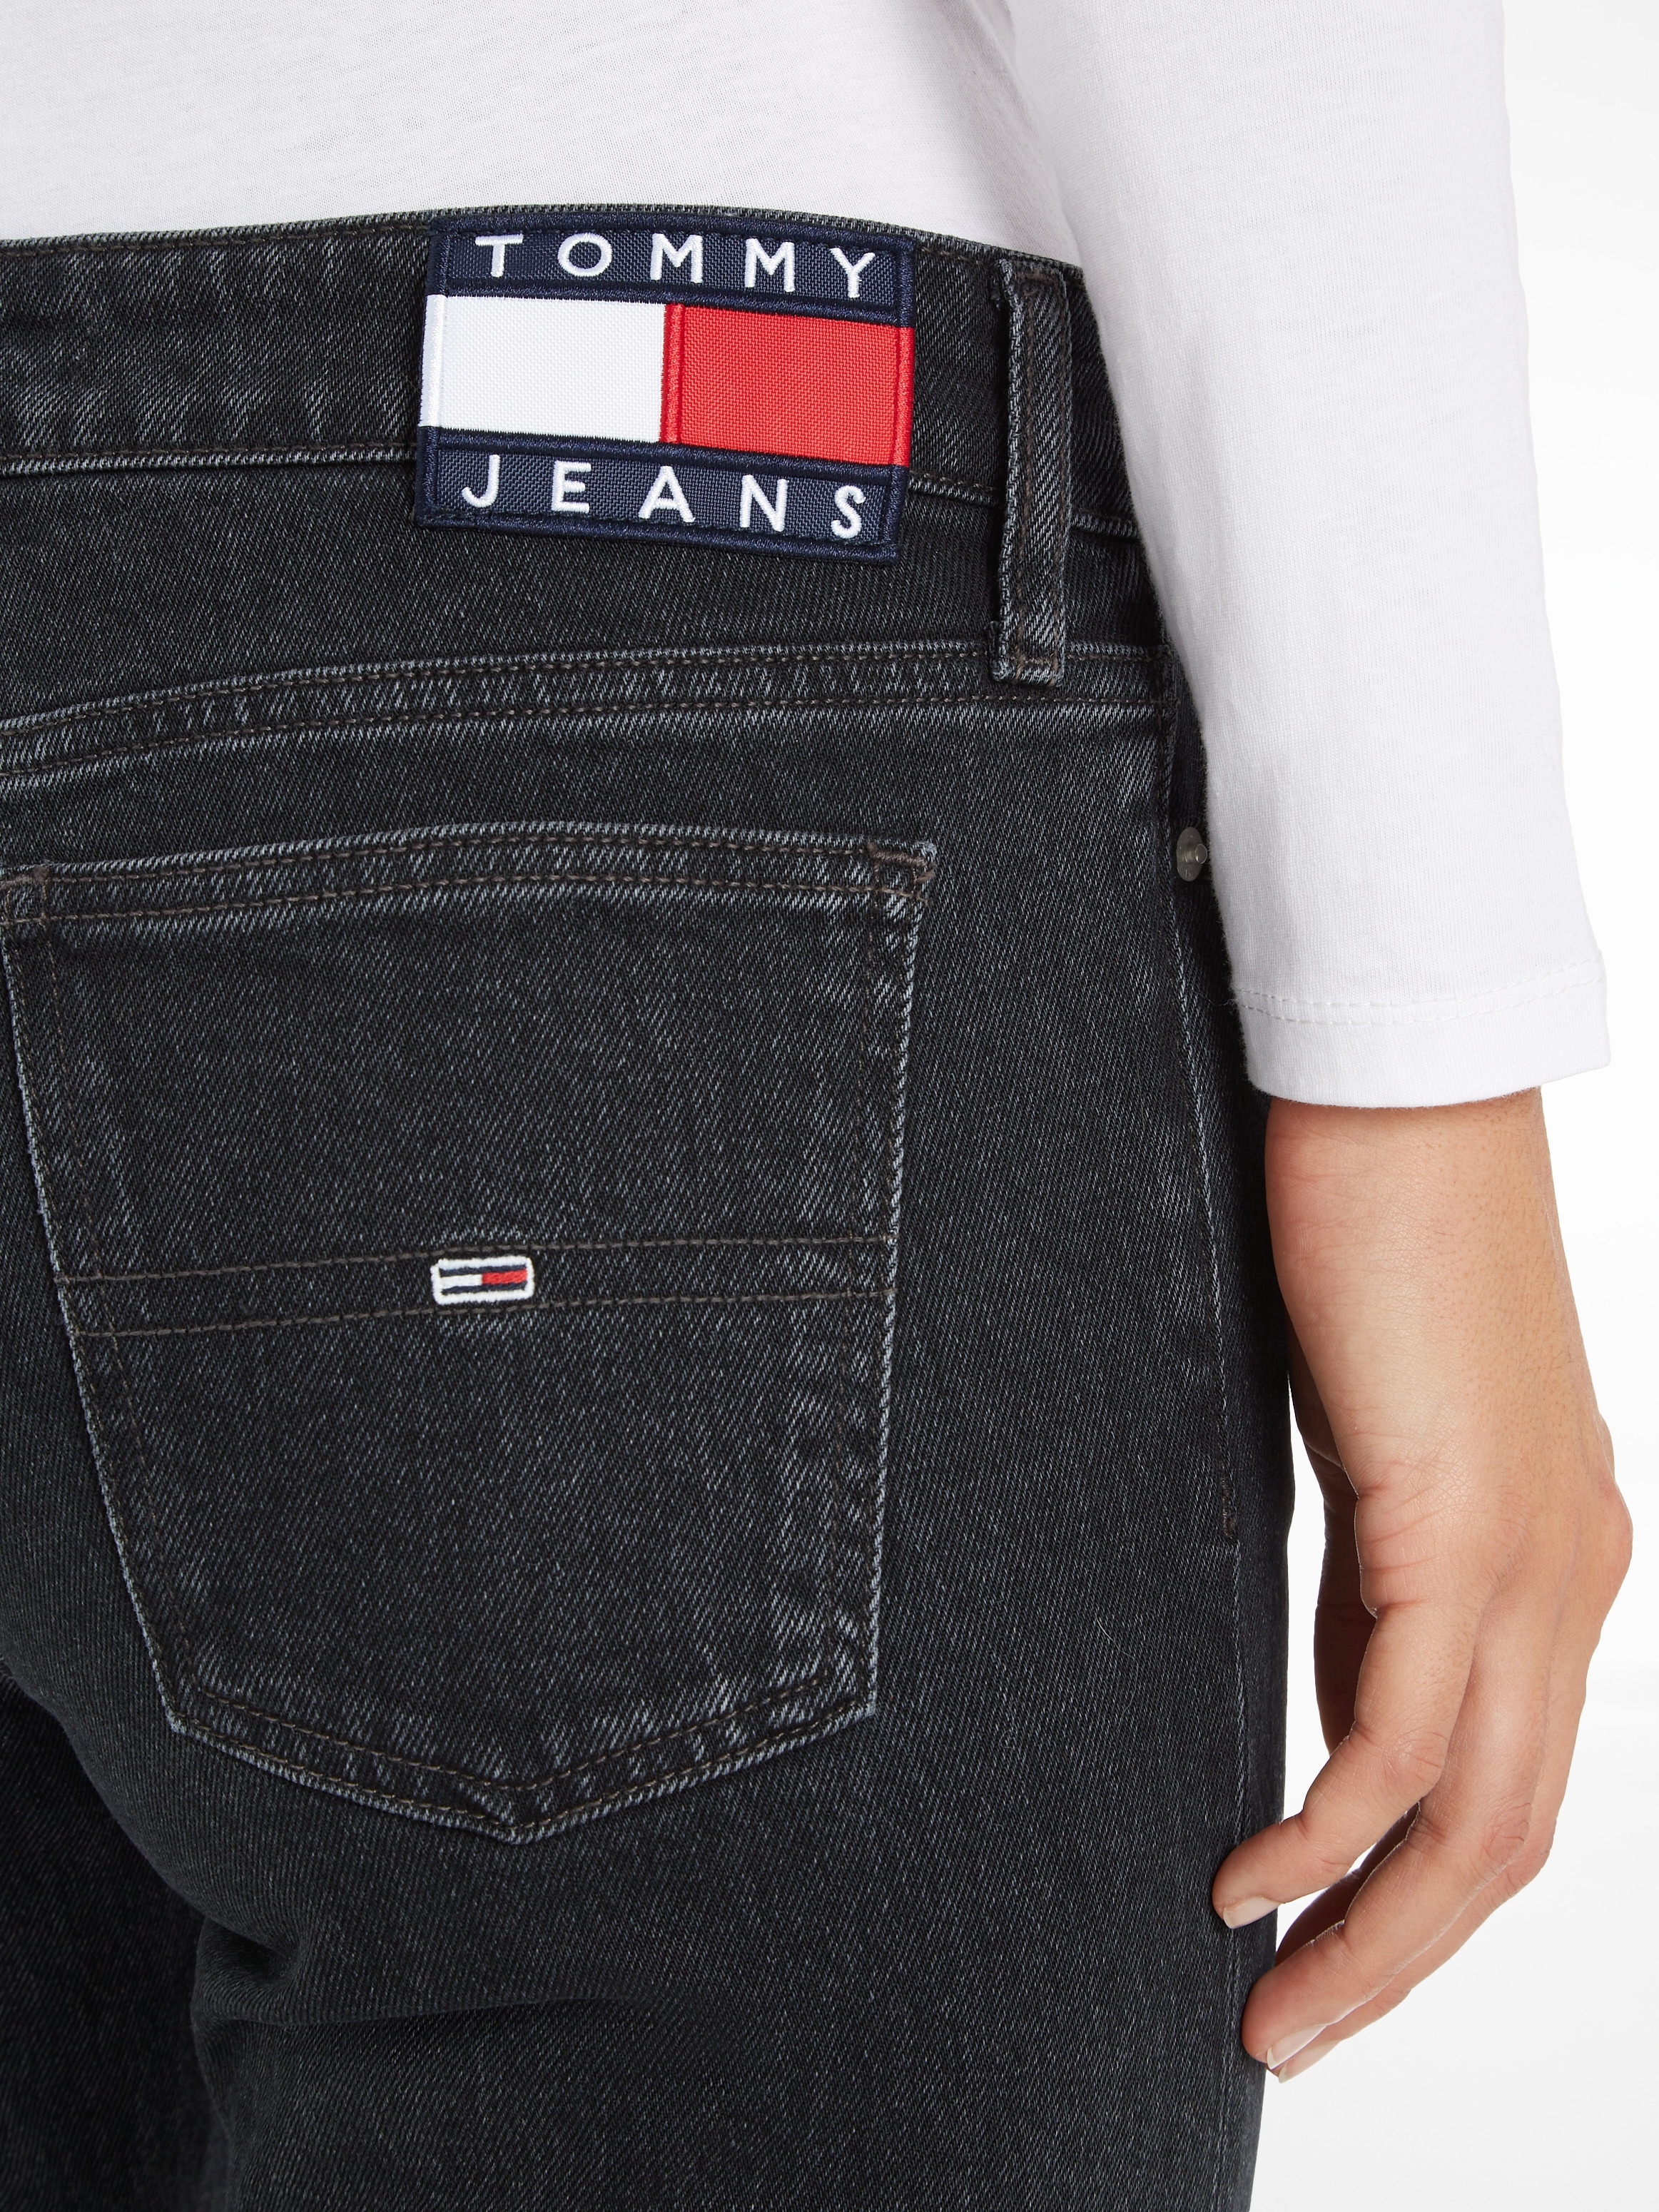 Tommy Jeans Schlagjeans, mit Tommy Logobadge Jeans kaufen für BAUR 